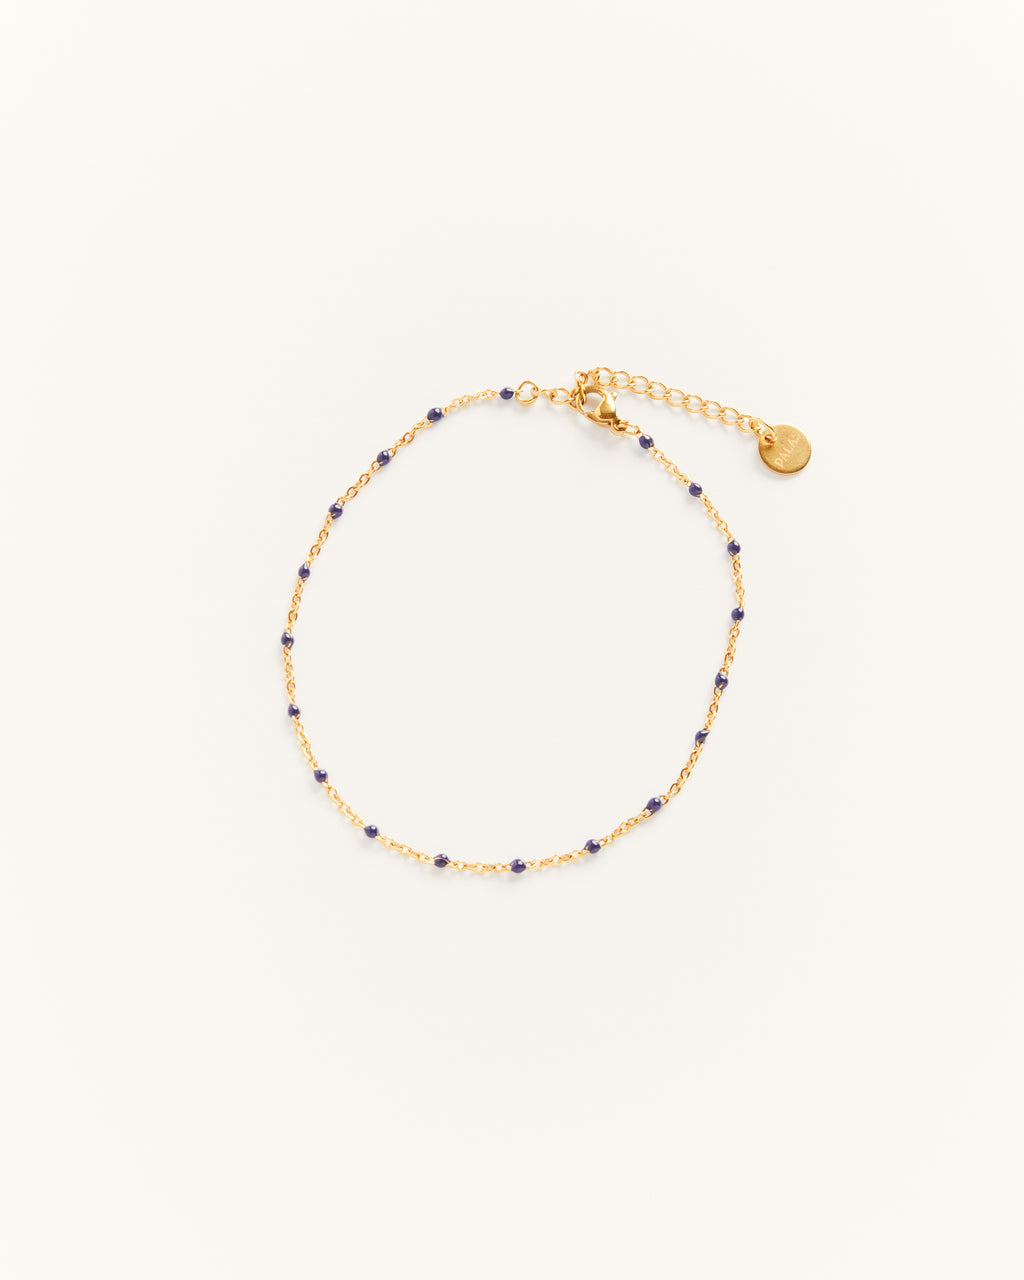 Castelo - Bracelet Navy Blue